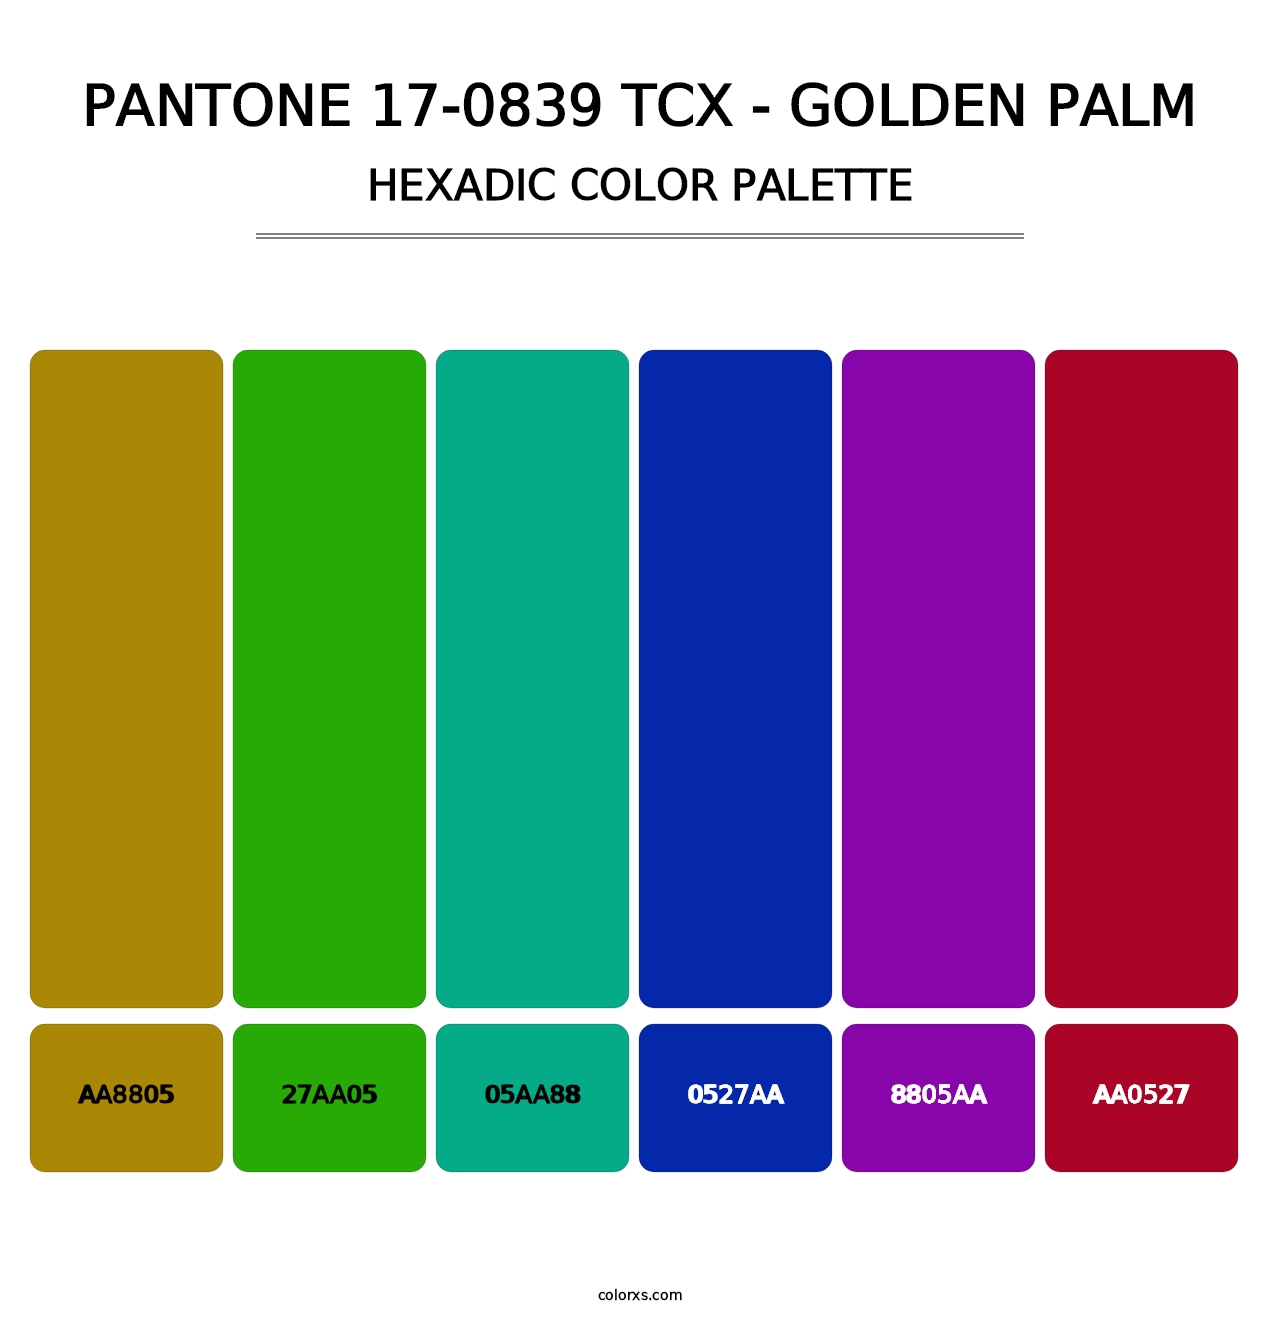 PANTONE 17-0839 TCX - Golden Palm - Hexadic Color Palette